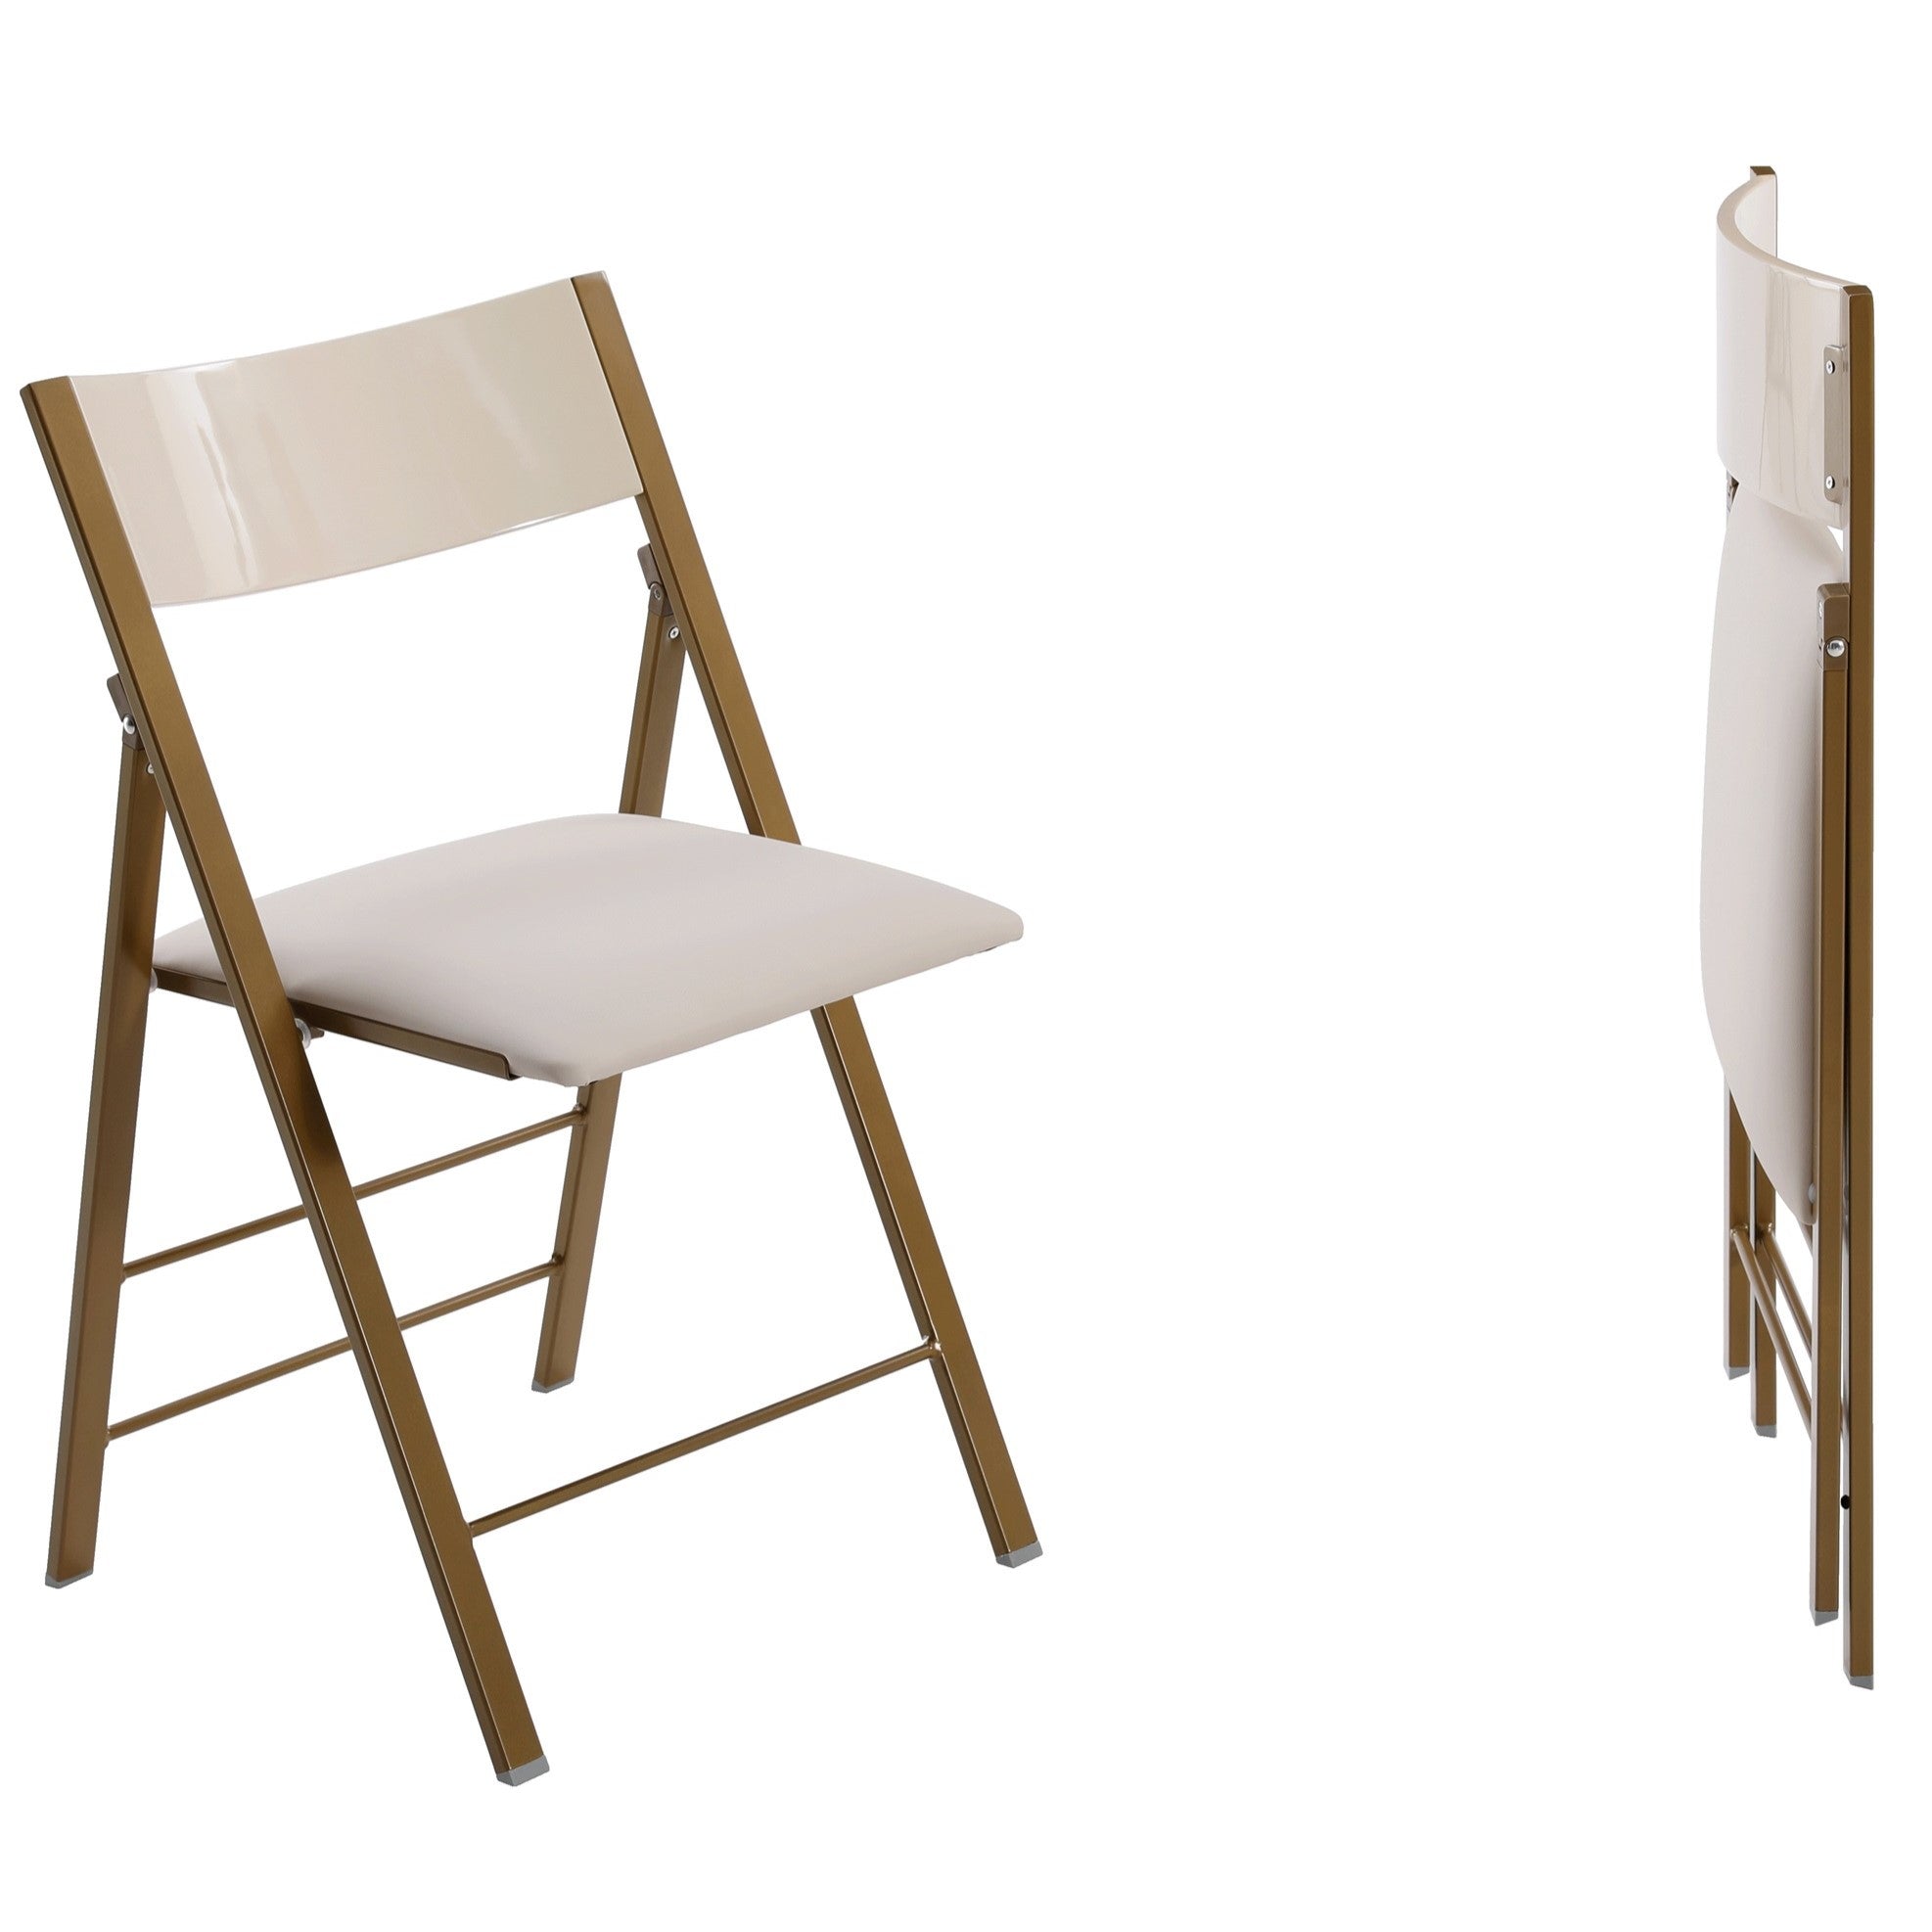 ארגונומיה של כסאות מתקפלים איכותיים: חשיבות הגובה הנכון בישיבה על כסא מתקפל